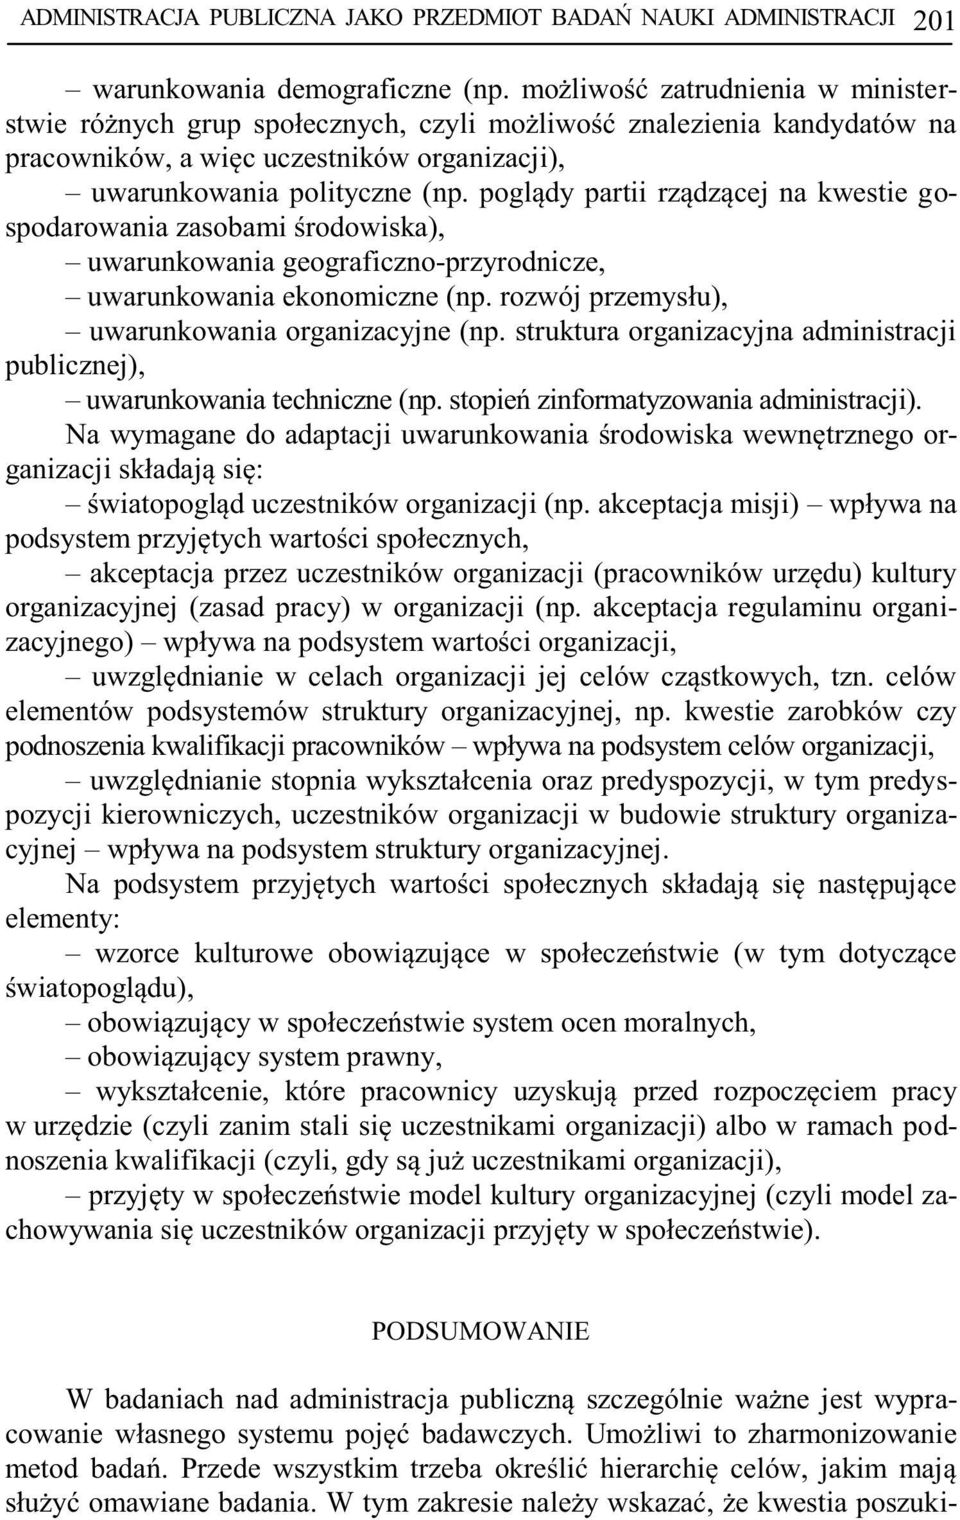 rgani organizacyjnej (zasad pracy) w organizacji (np.